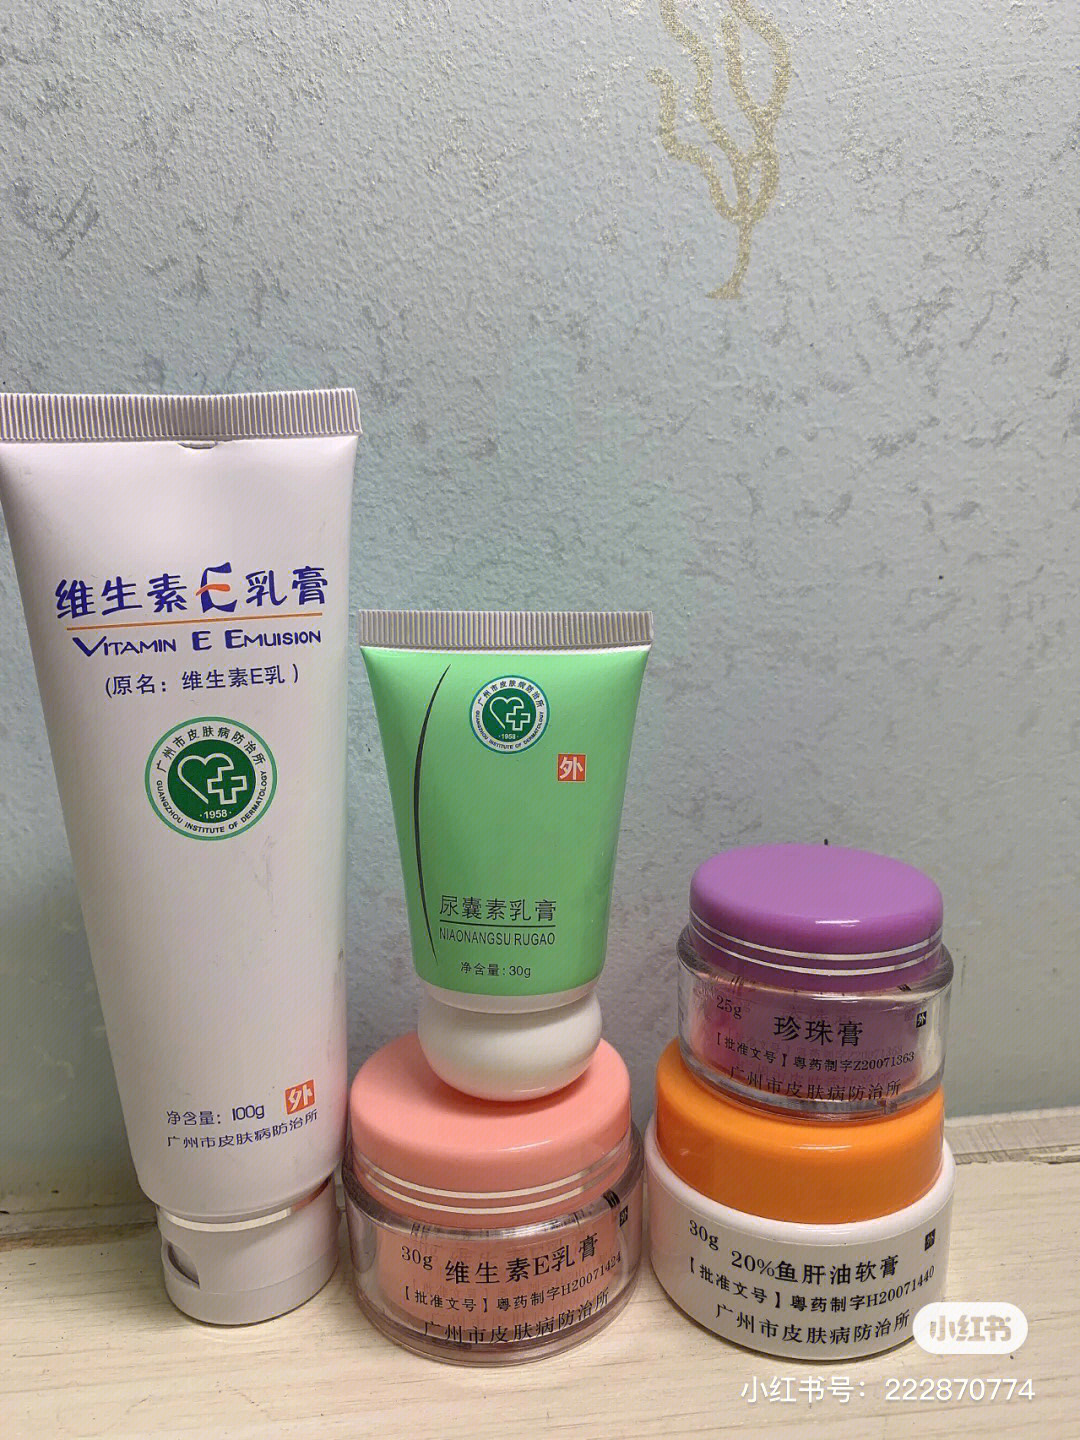 广东省皮肤病医院和广州市皮防所的自制乳膏